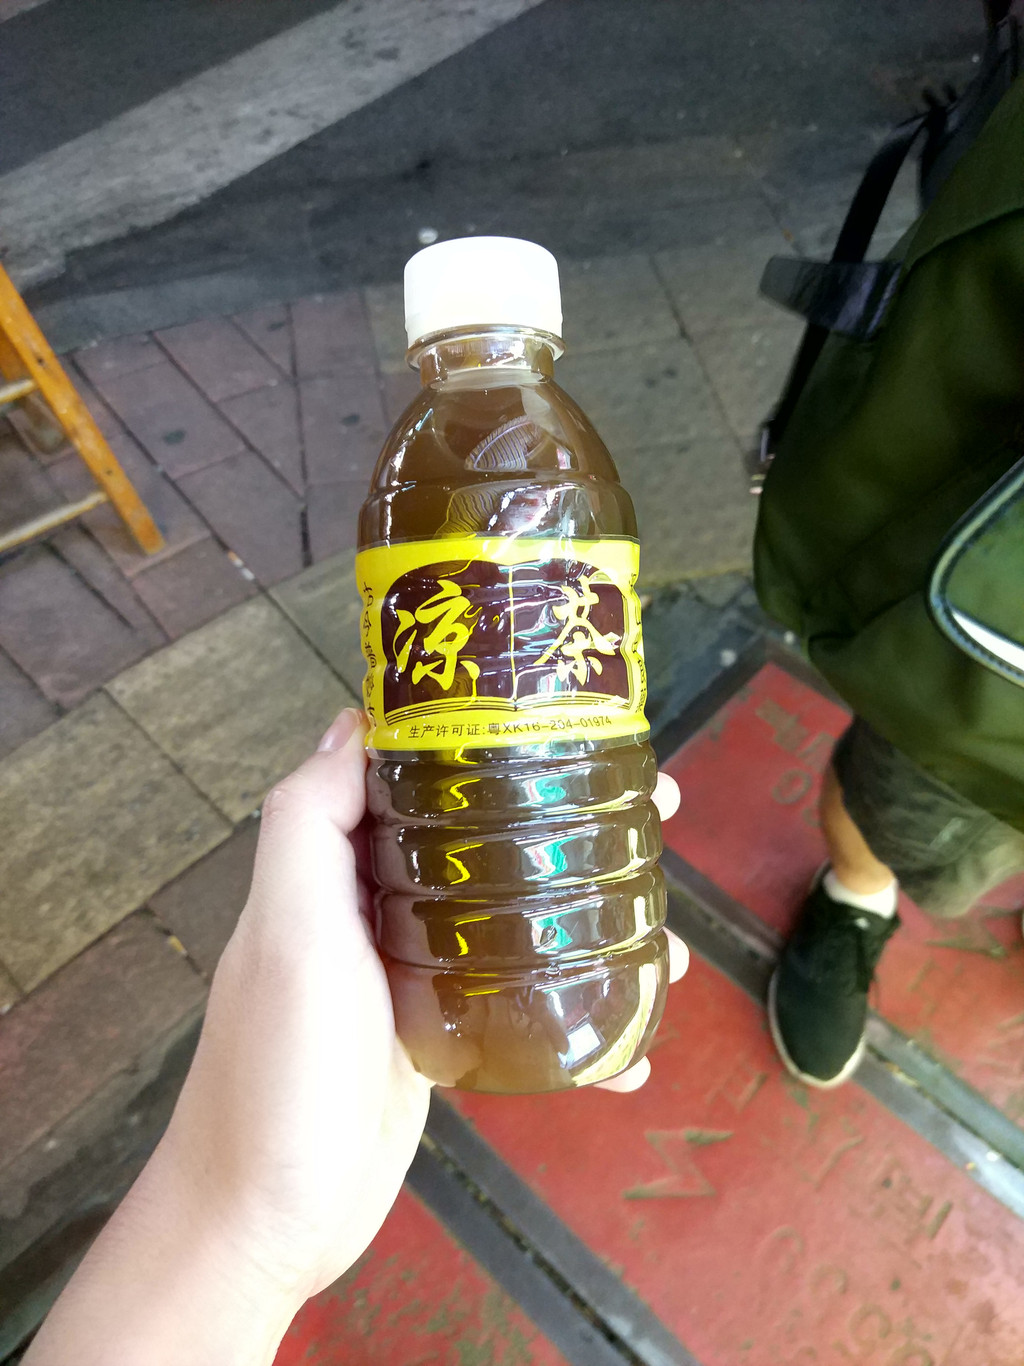 凉茶,各类攻略推荐的西关地区必喝的凉茶,一般广州凉茶分甜的和不甜的